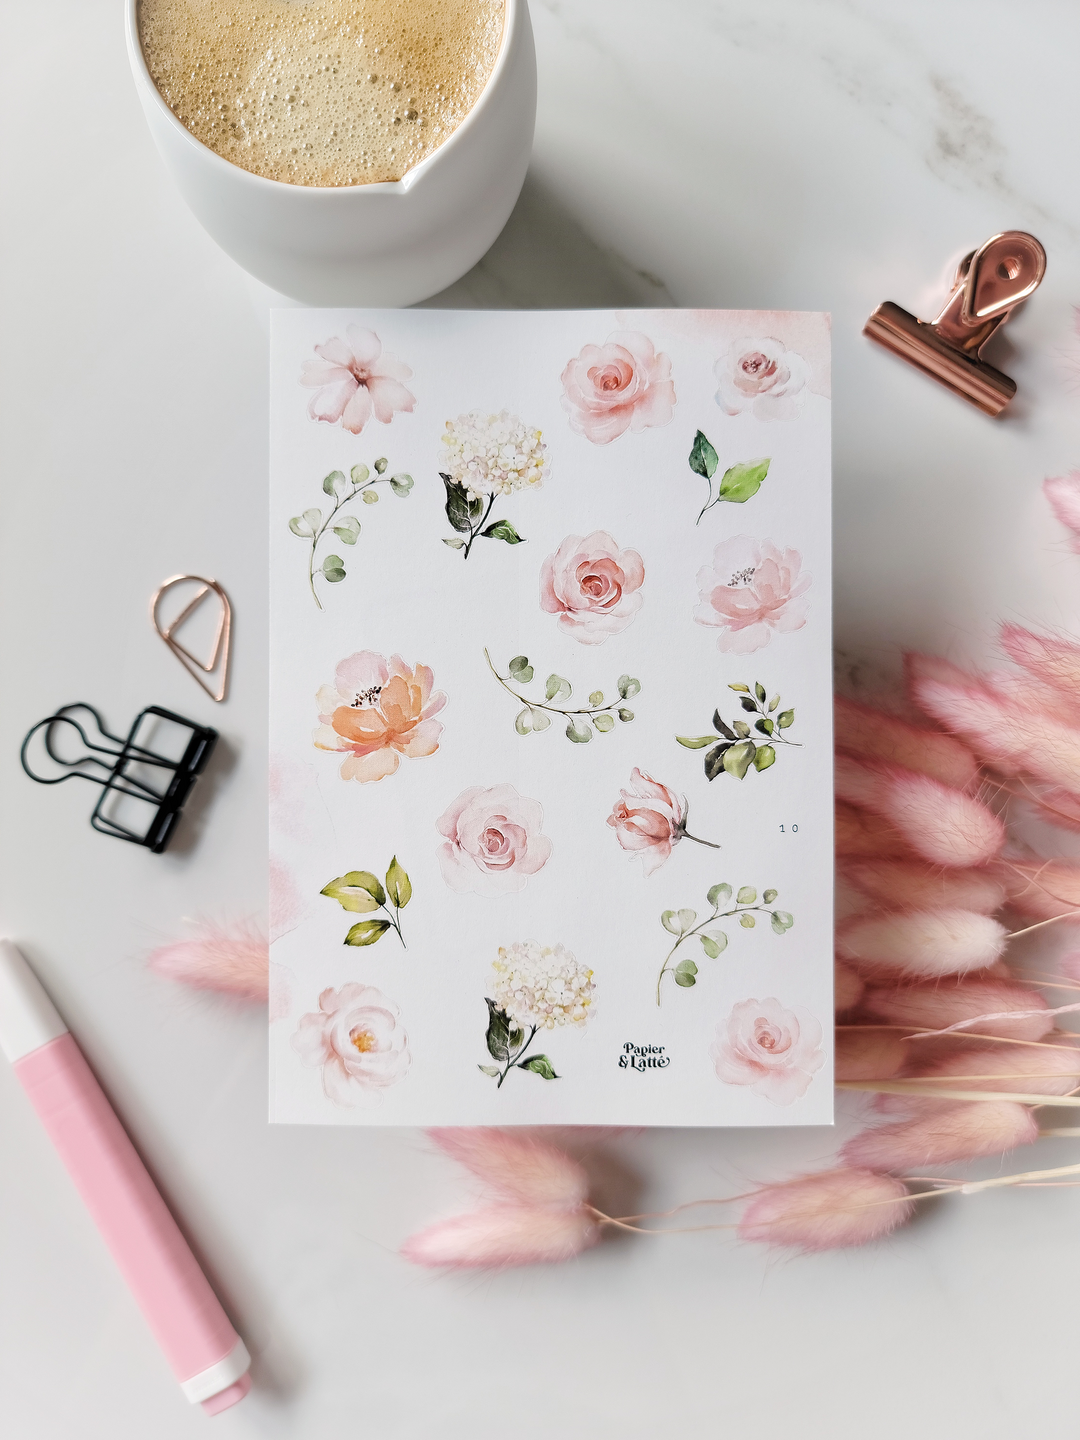 Autocollants - 10.Fleurs roses / Stickers